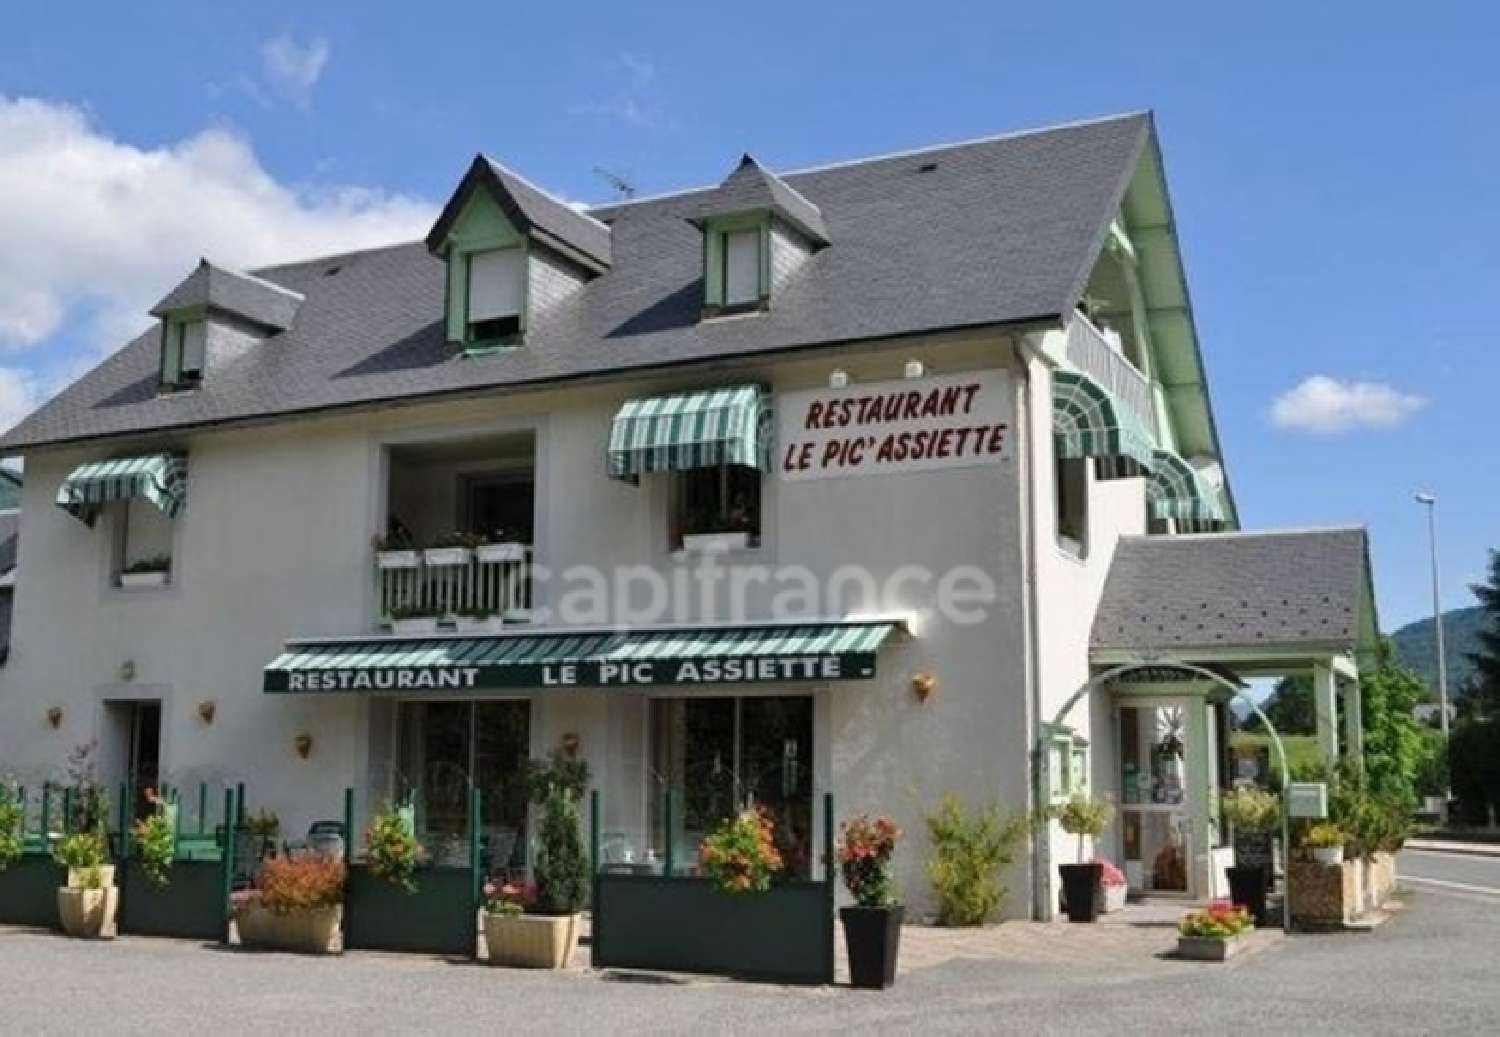  à vendre restaurant Guchan Hautes-Pyrénées 1